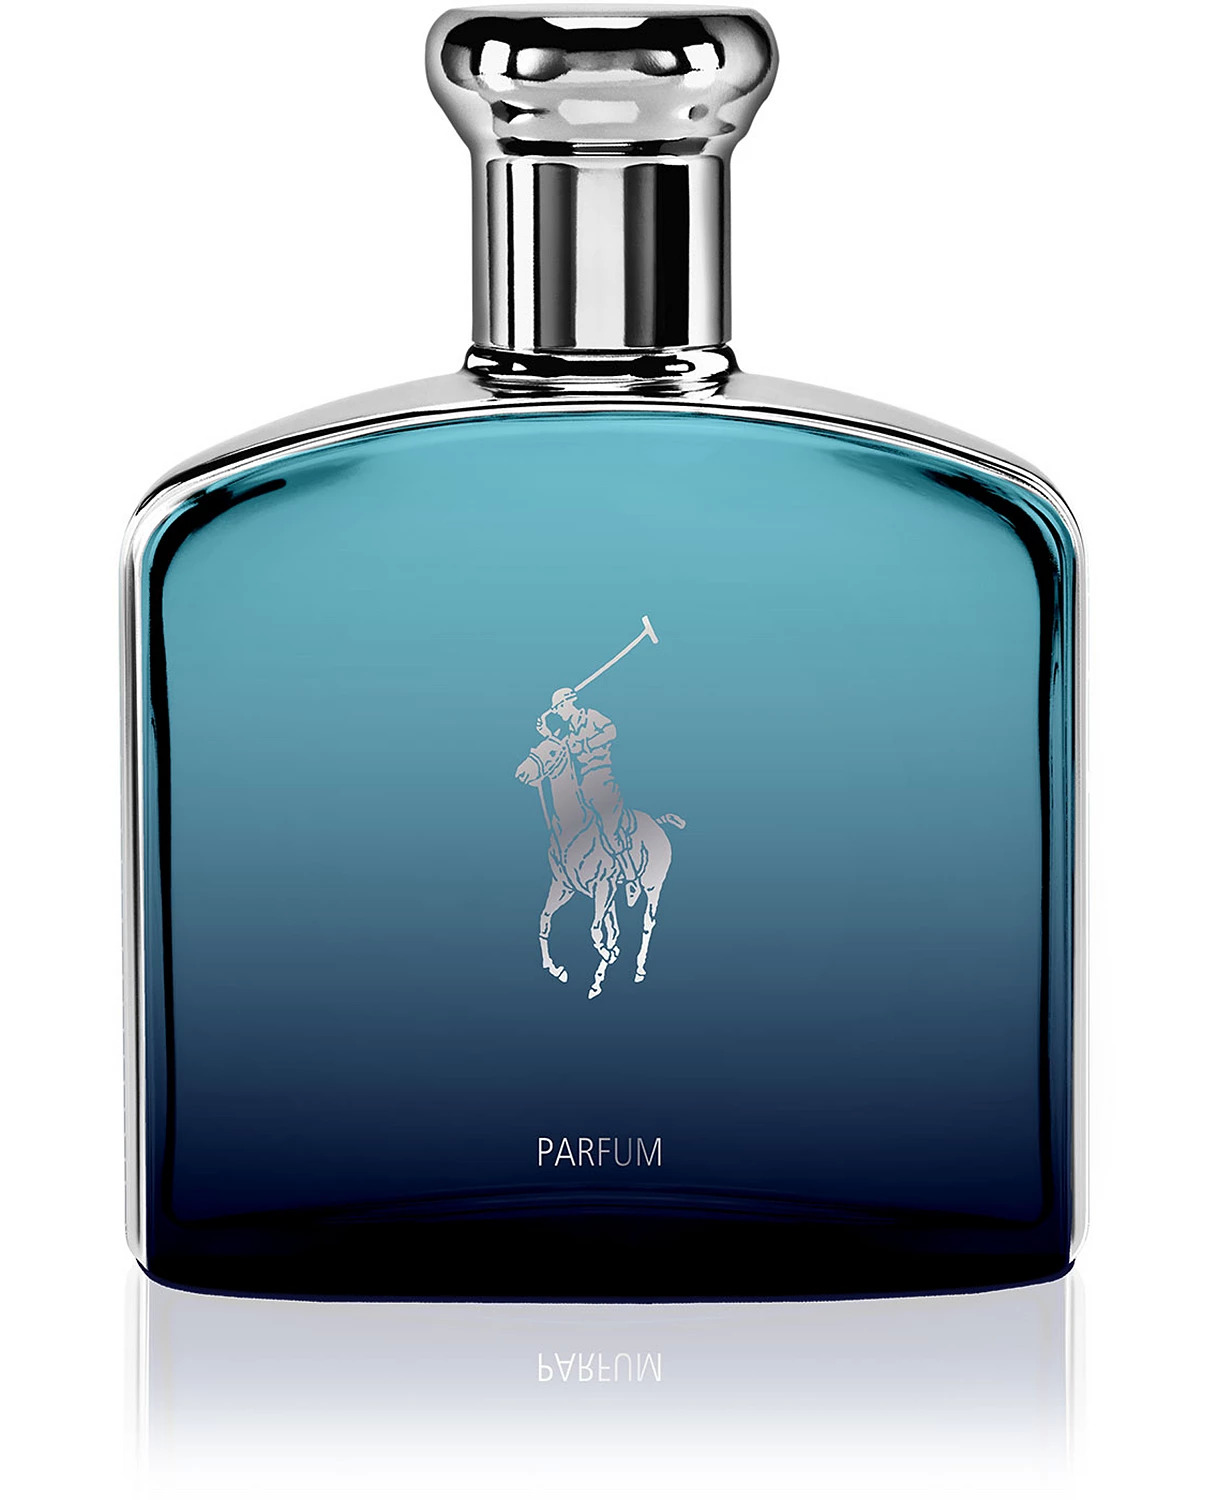 Men's Fragrances: 4.2oz Ralph Lauren Men's Polo Deep Blue Parfum Spray $52.50 & More + Free S/H